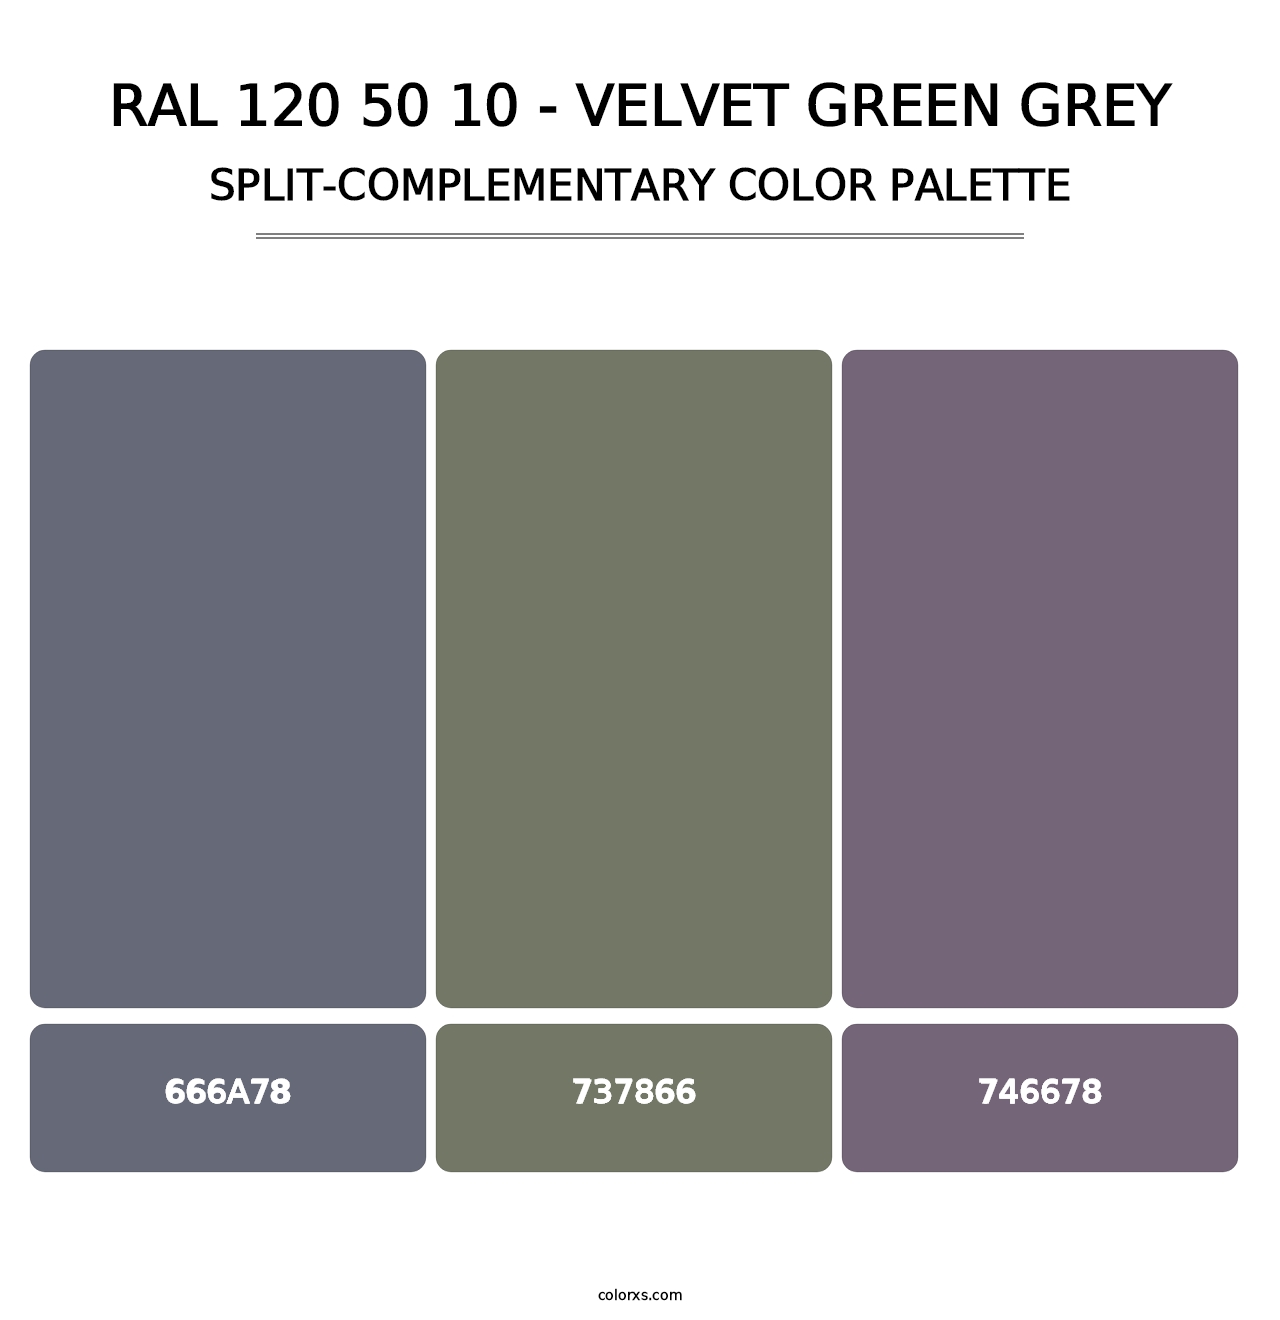 RAL 120 50 10 - Velvet Green Grey - Split-Complementary Color Palette